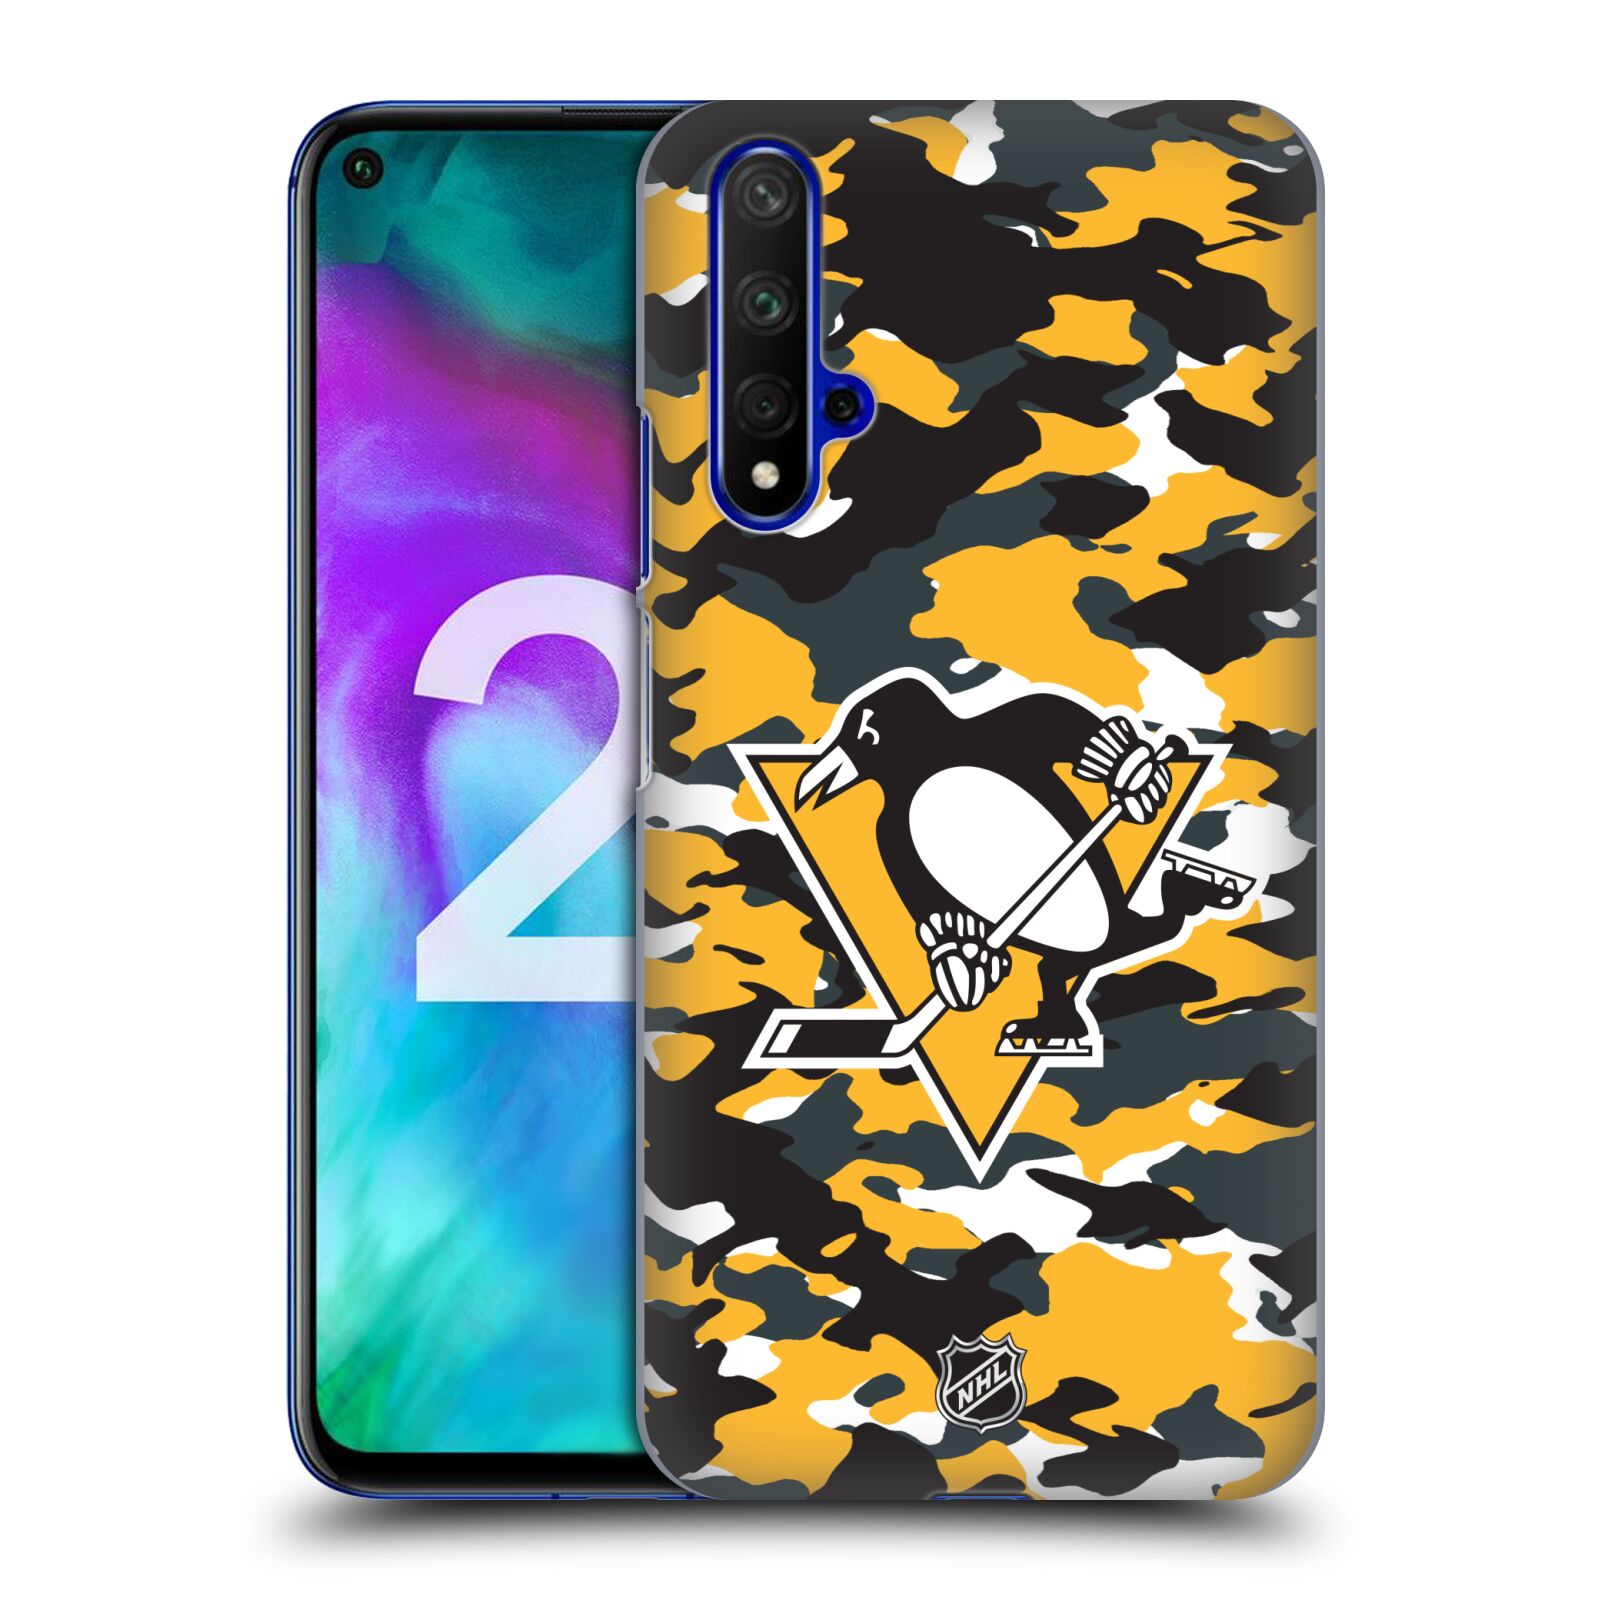 Pouzdro na mobil HONOR 20 - HEAD CASE - Hokej NHL - Pittsburgh Penguins - kamufláž znak